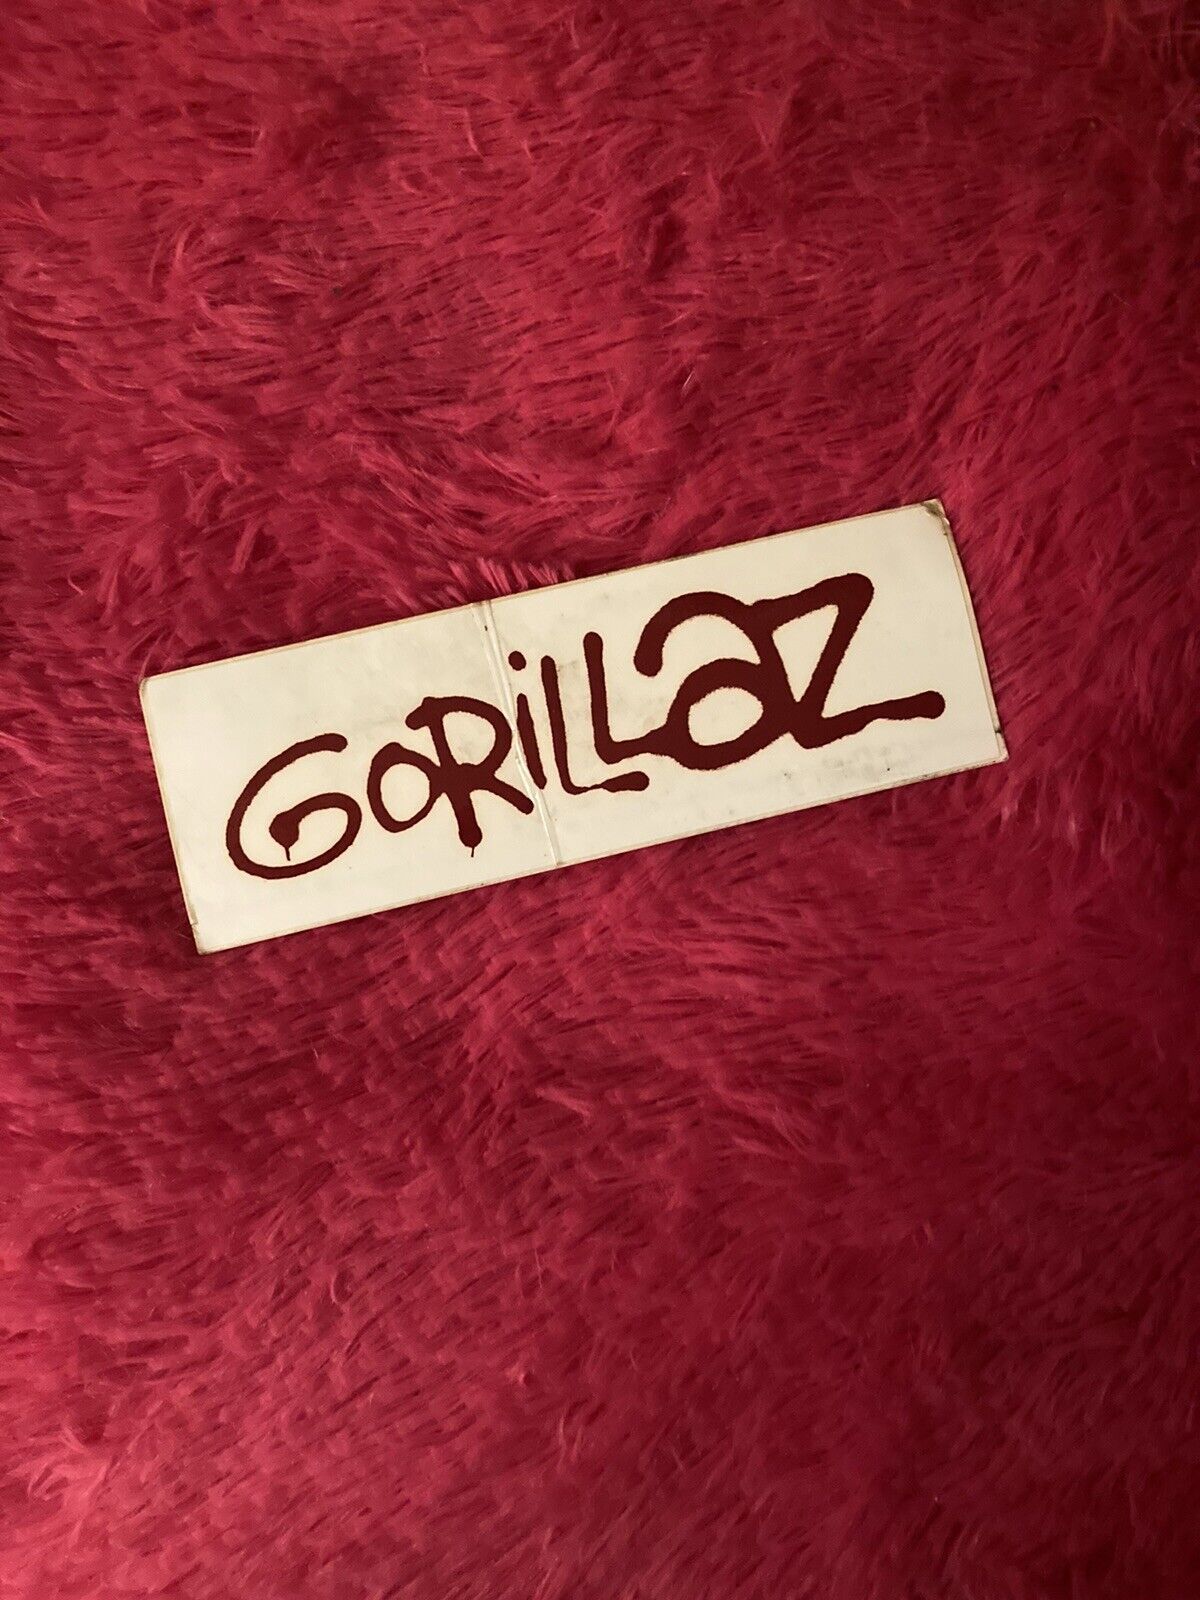 Gorillaz Demon Days 2005 Promo Sticker Collectors Rare Music